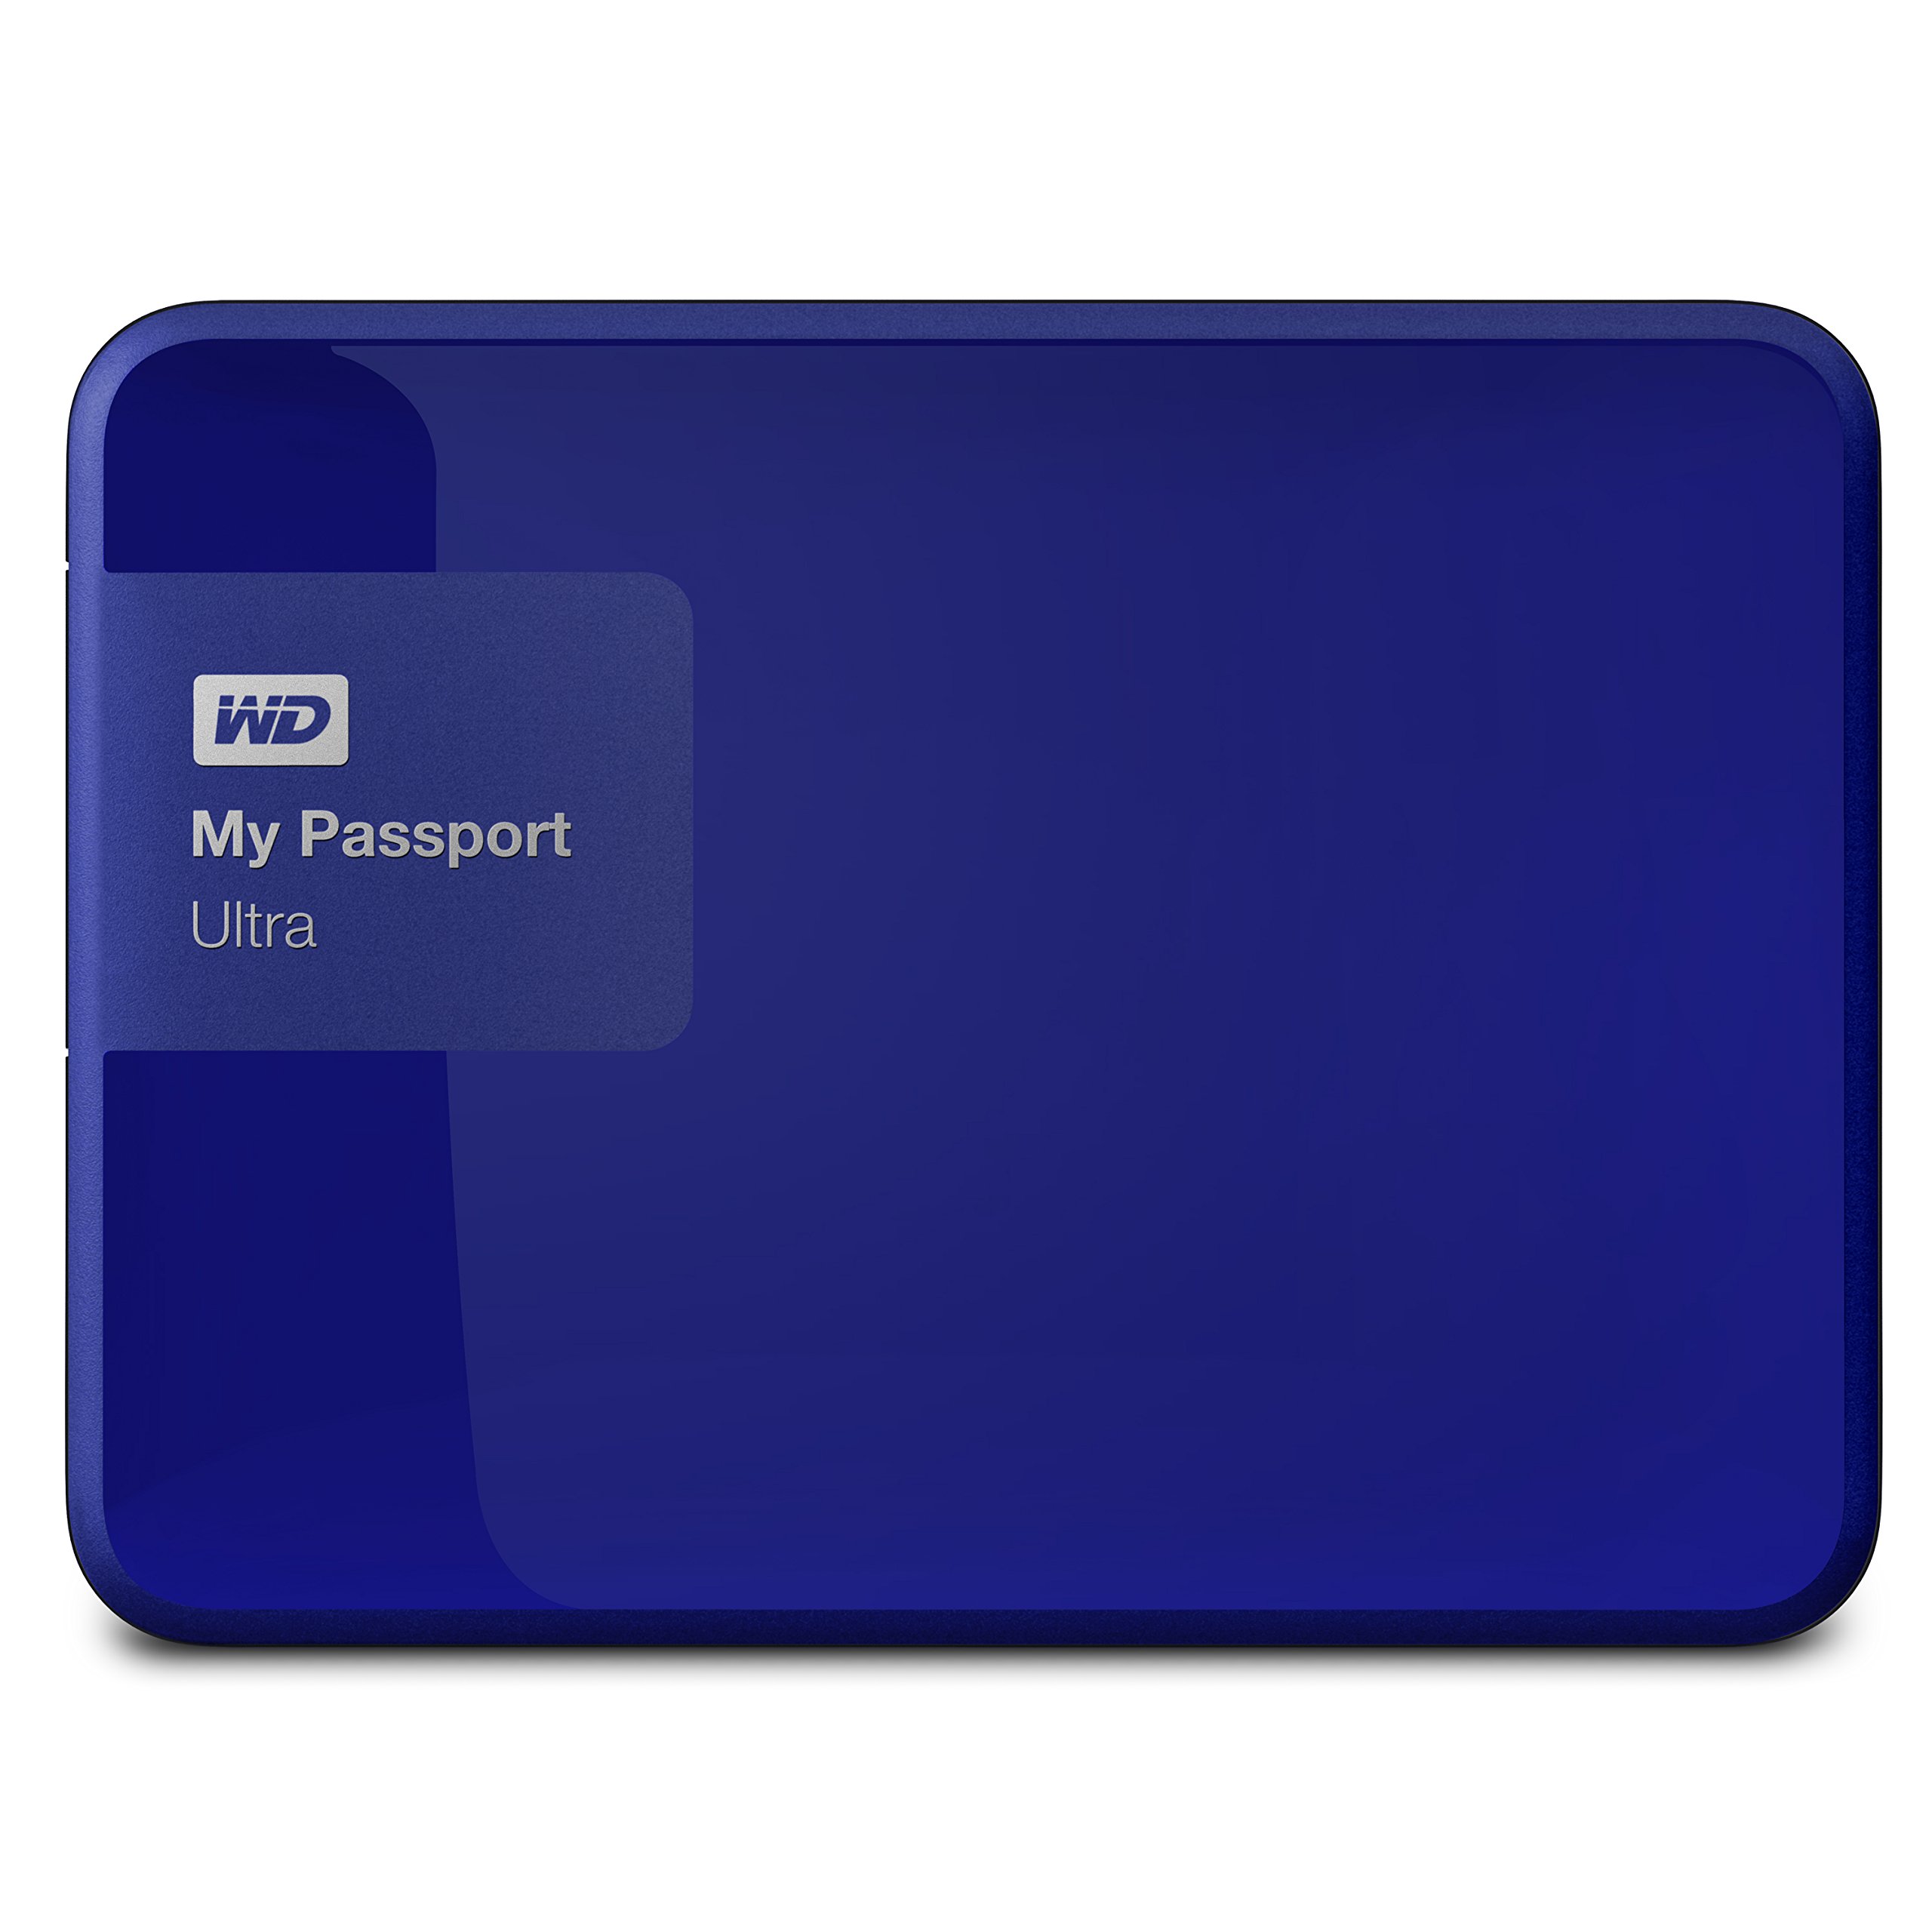 WD 1TB My Passport Ultra USB 3.0 Secure Portable External Hard Drive Blue WDBGPU0010BBL-NESN Old Model並行輸入品